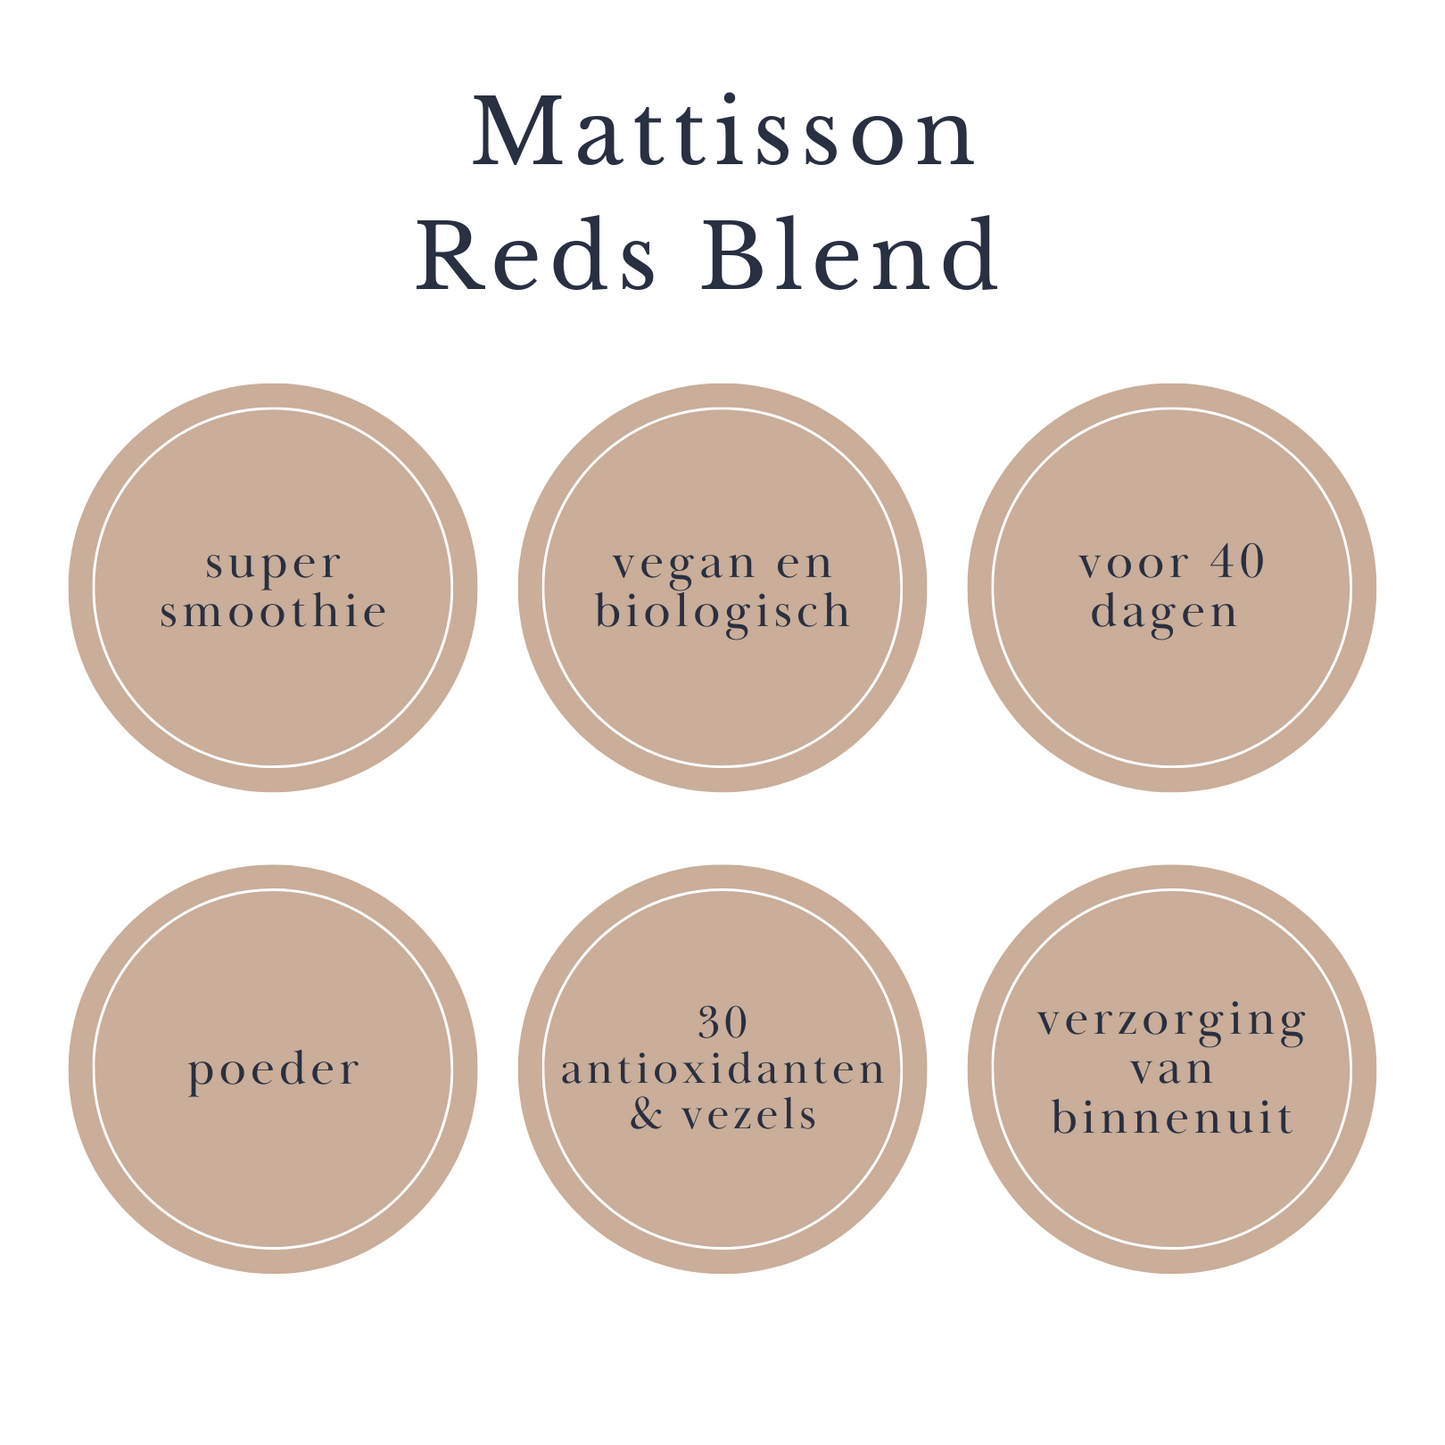 Mattisson Reds Biologische Blend (poeder)